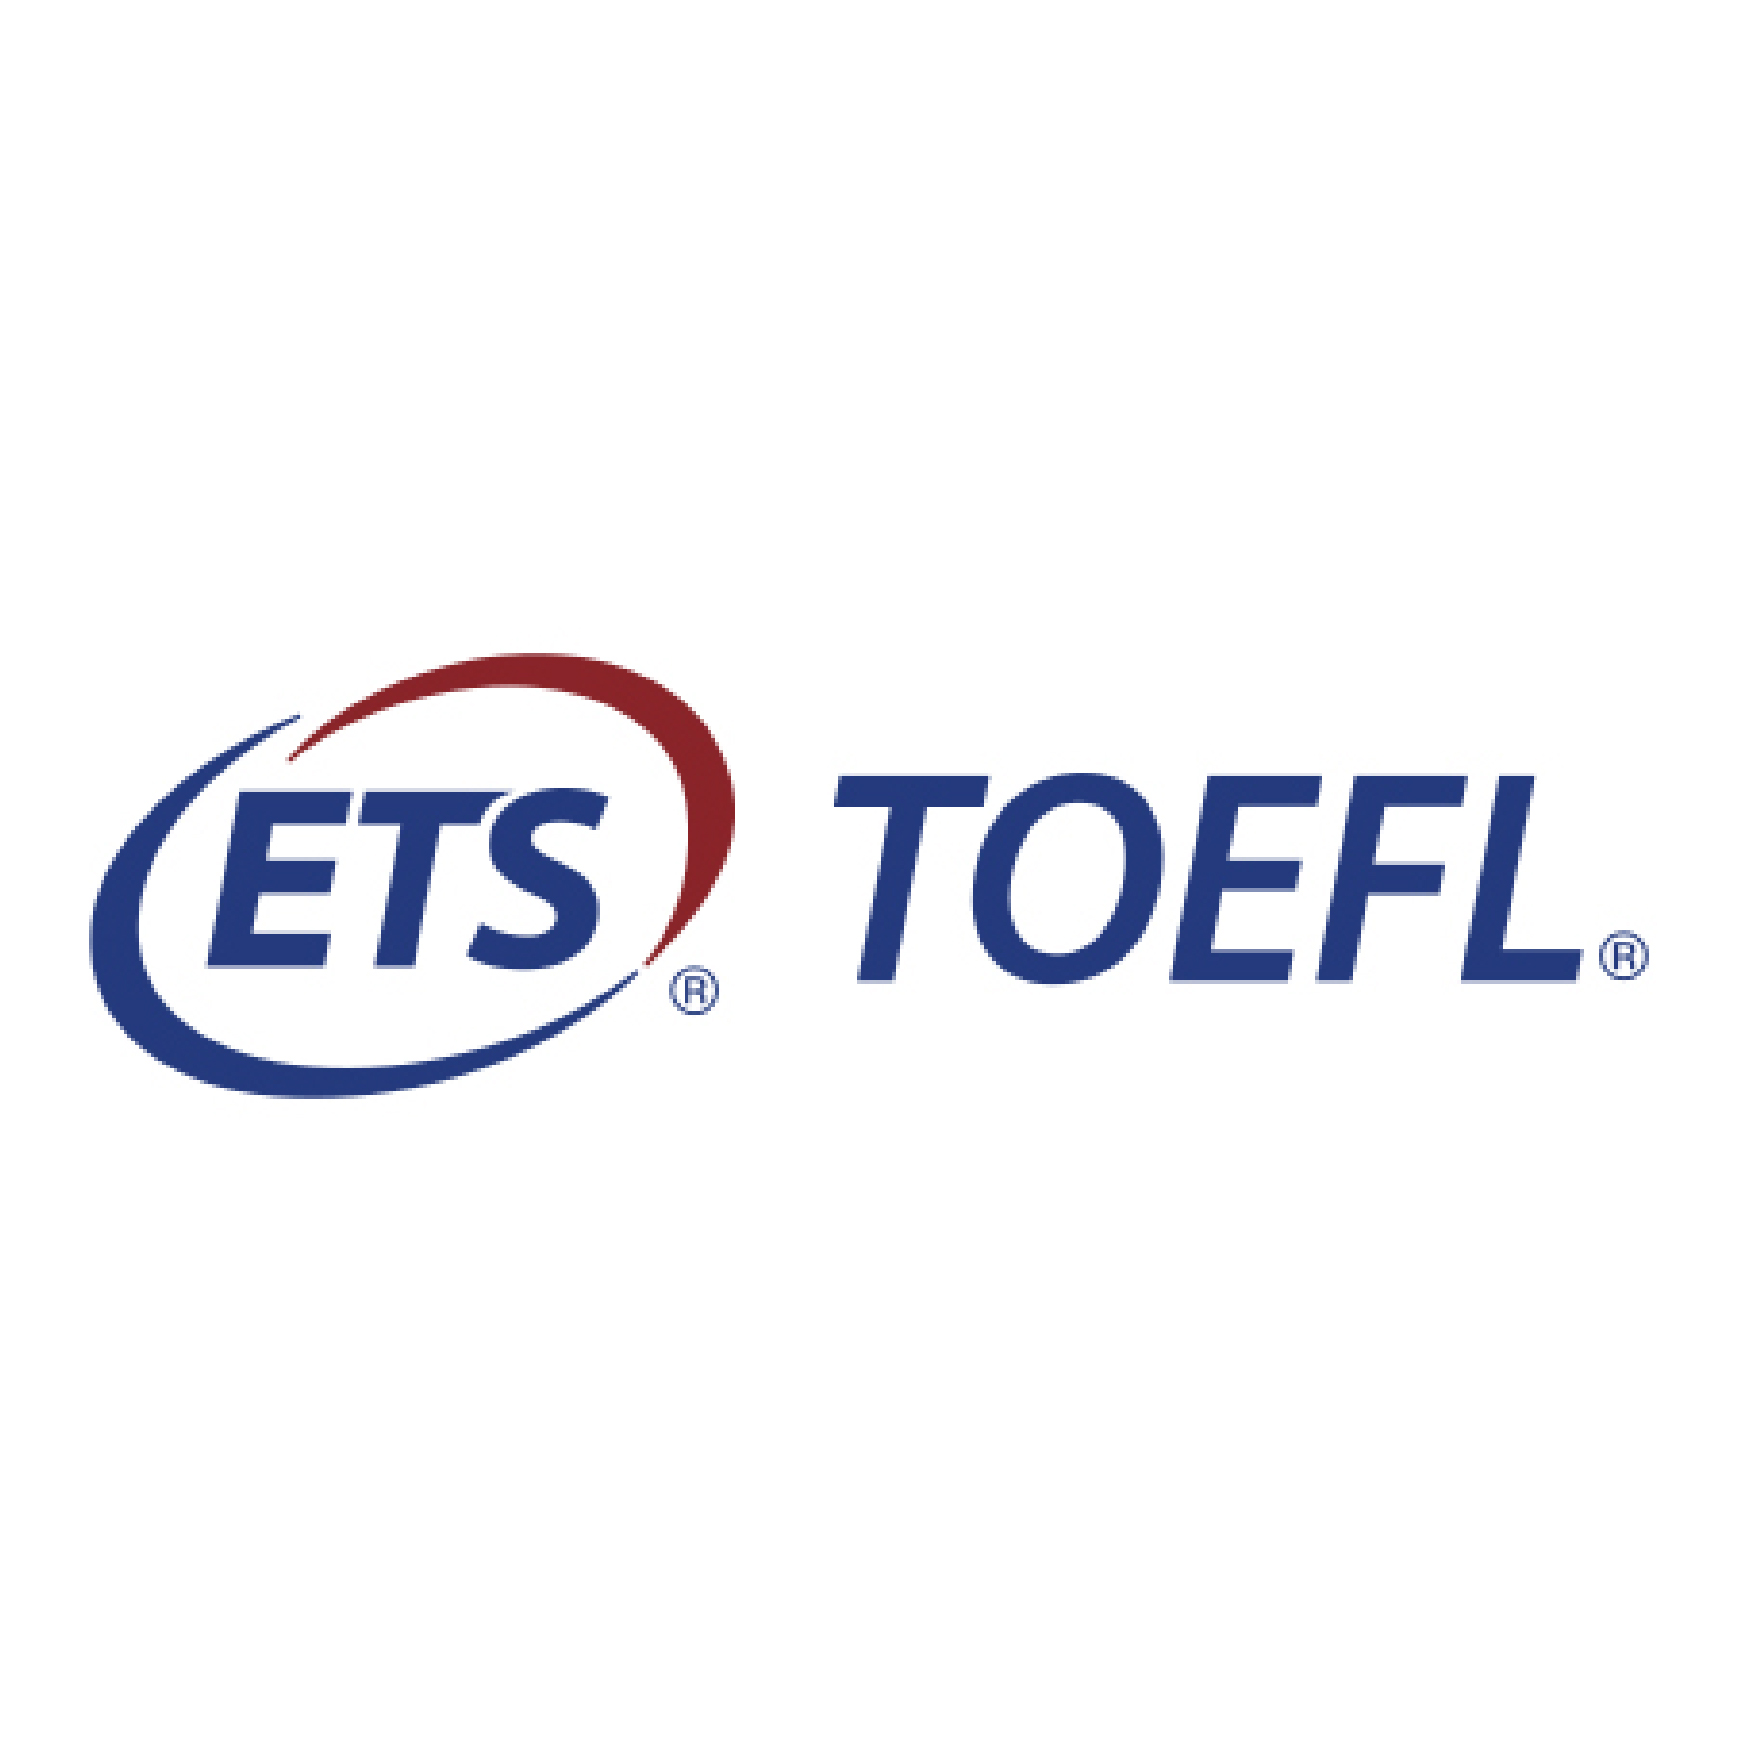 ETS TOEFL BCCIE